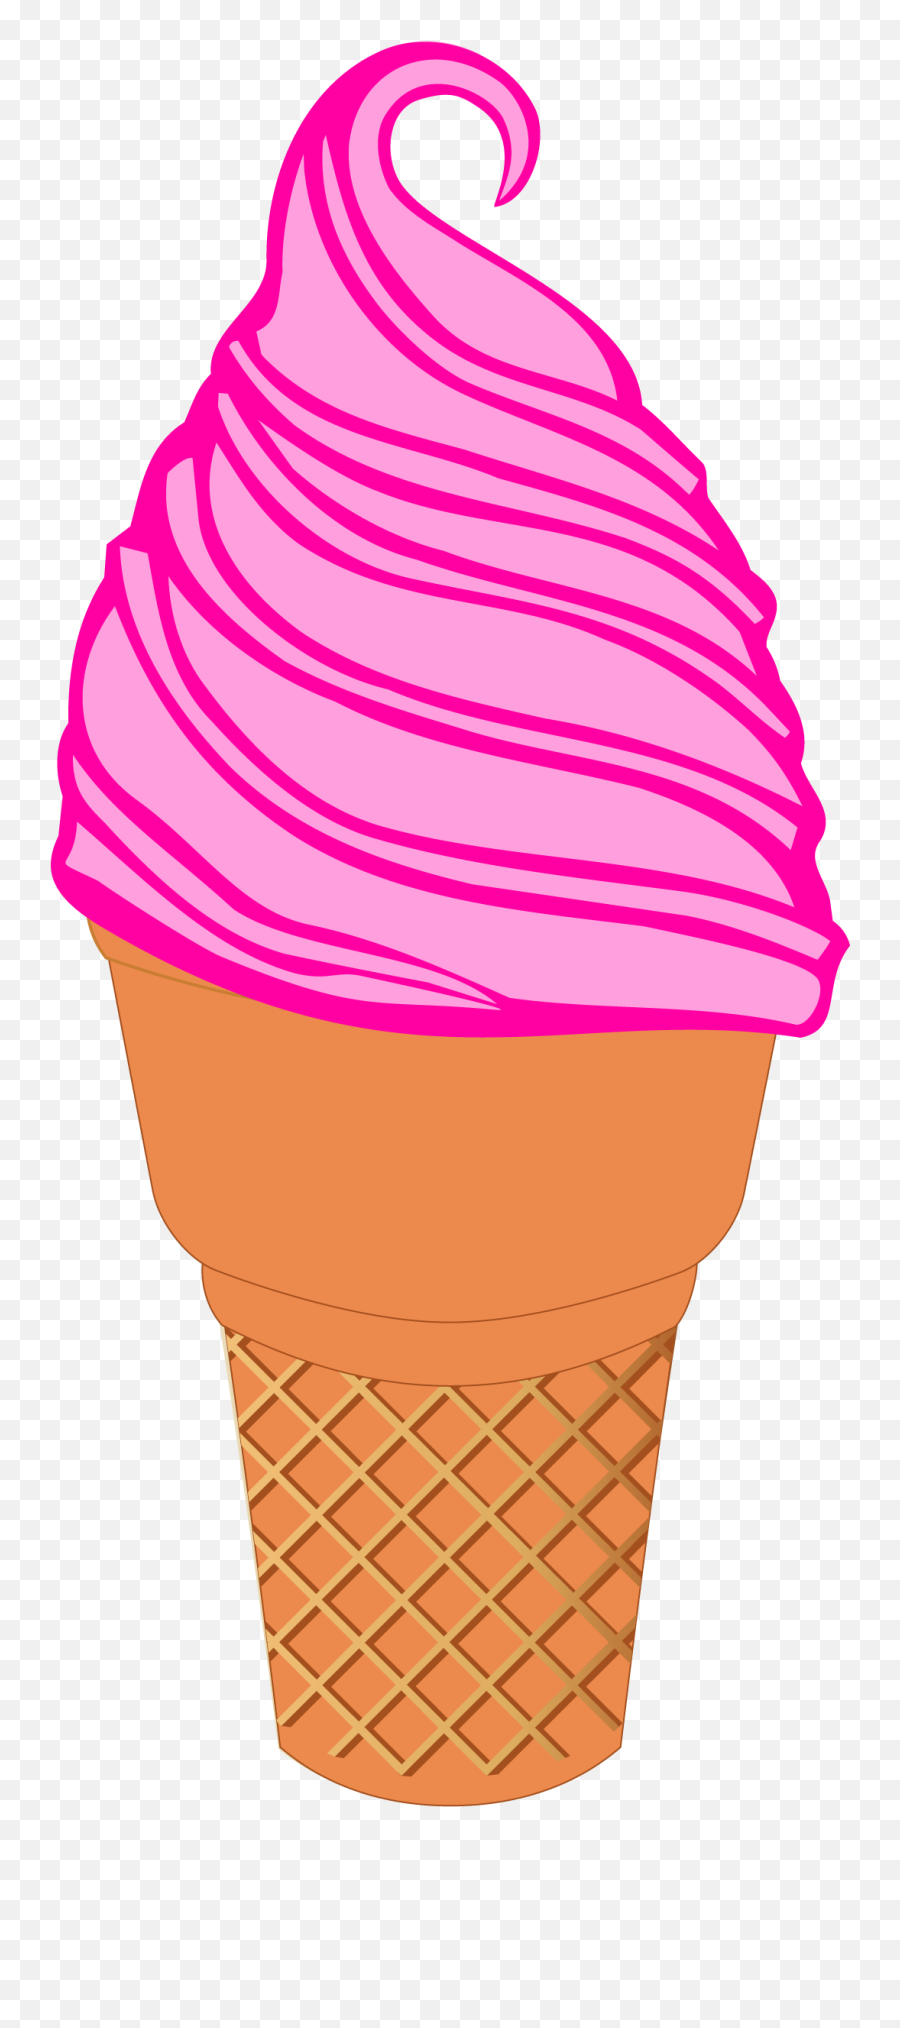 Ice Cream N - Clip Art Ice Cream Transparent Background Png,Ice Cream Transparent